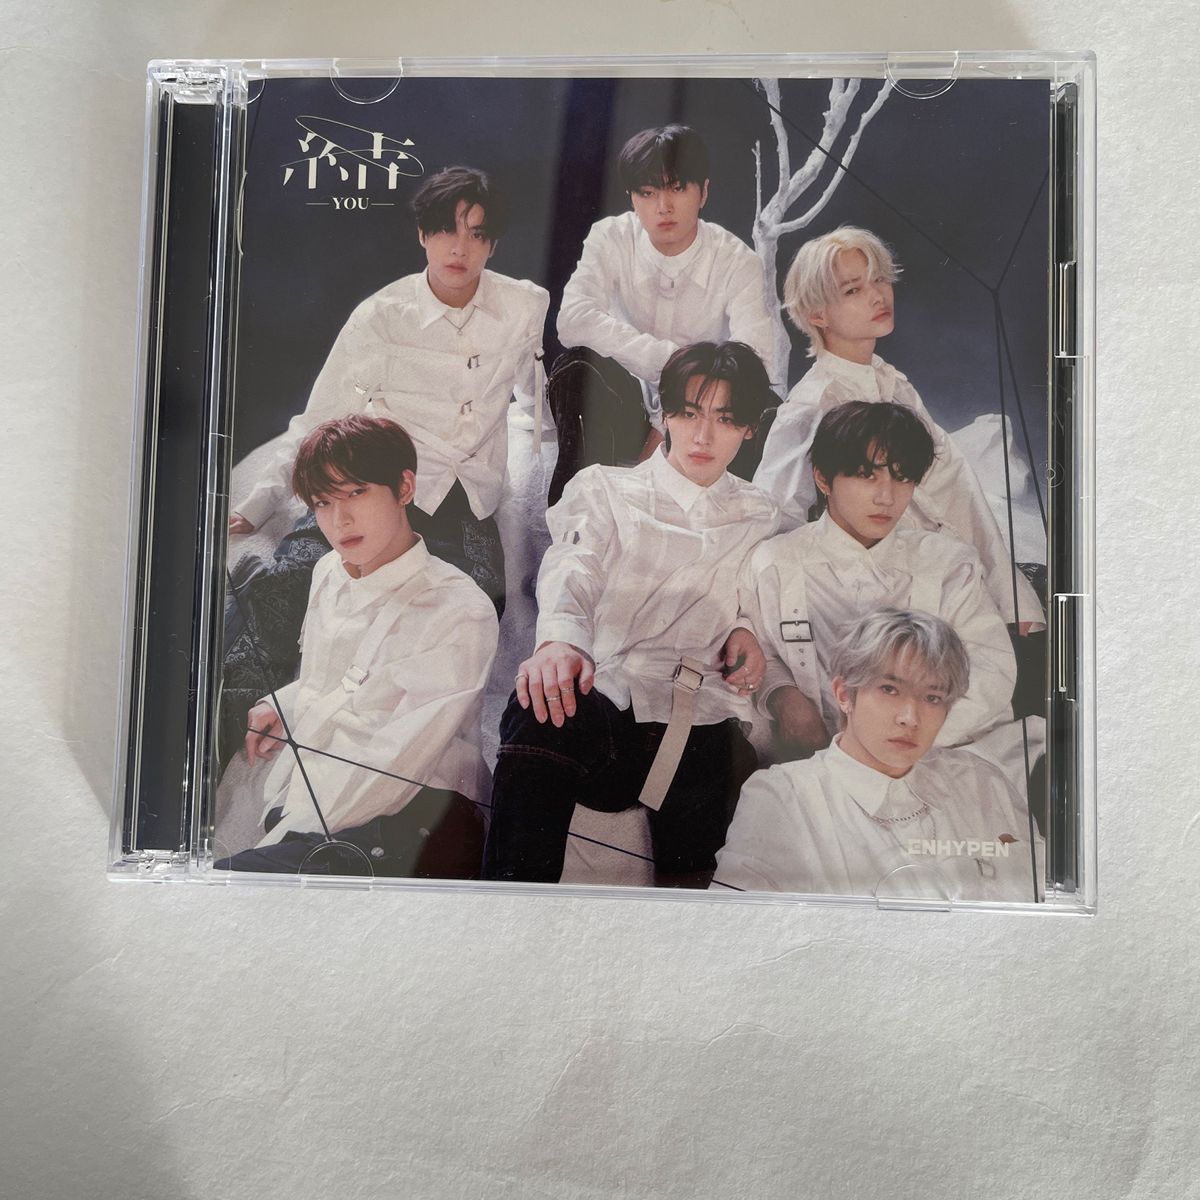 ENHYPEN  日本3rDシングル盤 「結 ーYOUー」初回限定盤B  CD＋DVD